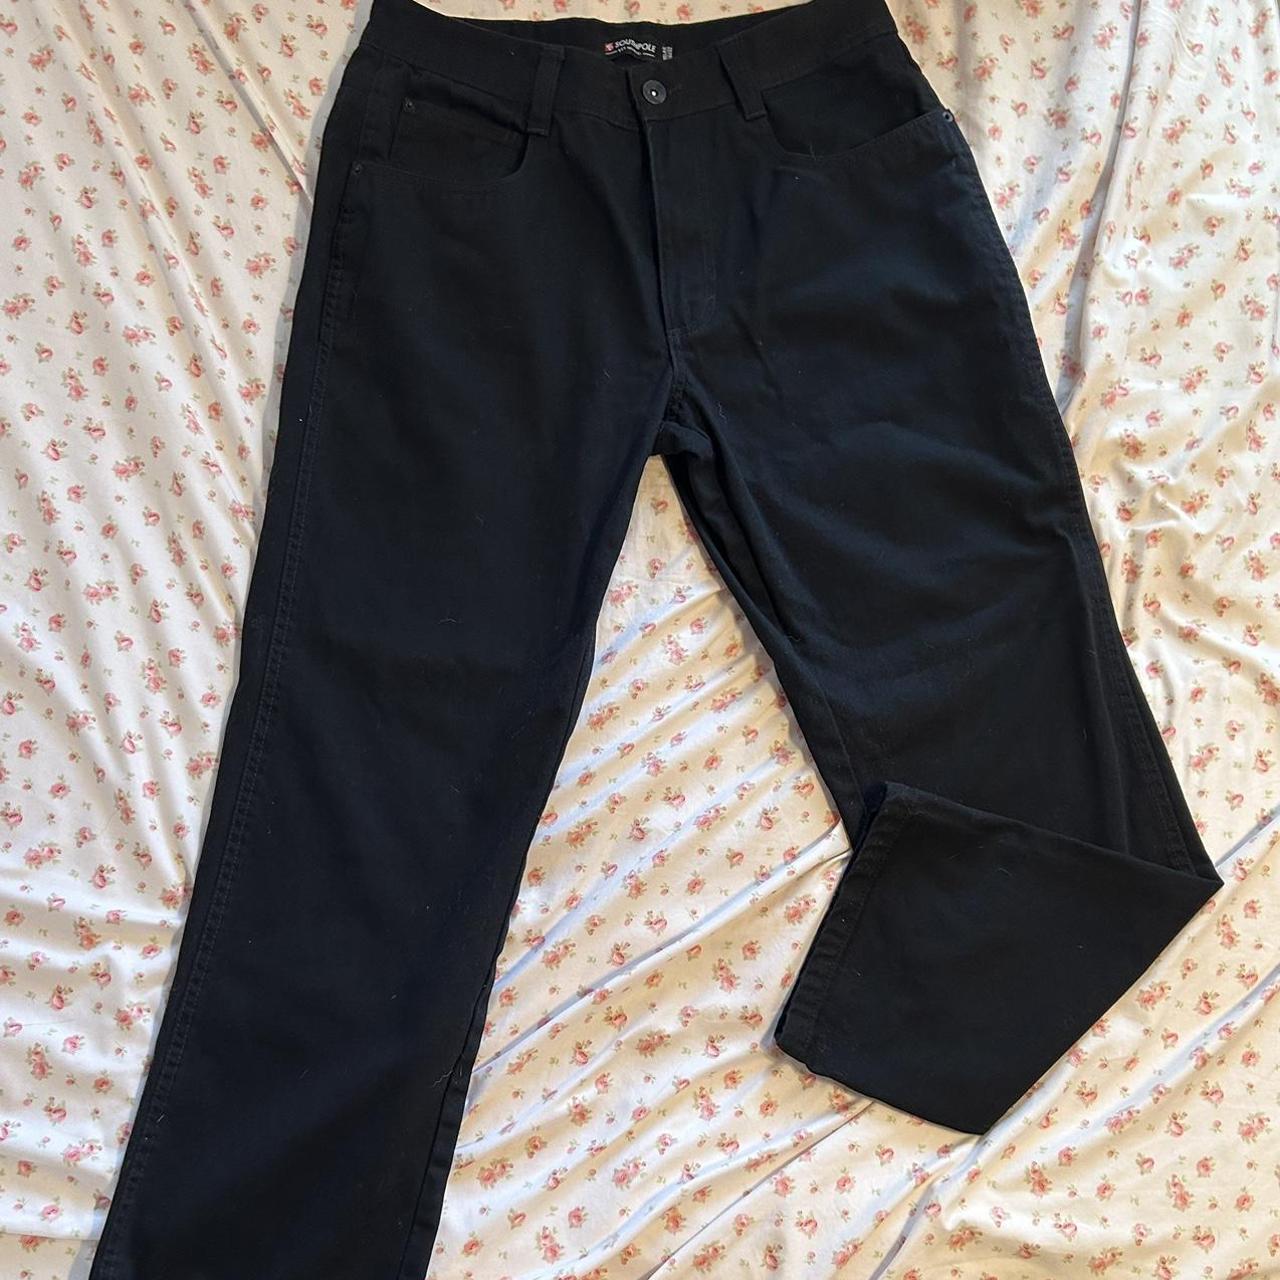 black southpole straight leg jeans 🌸size... - Depop